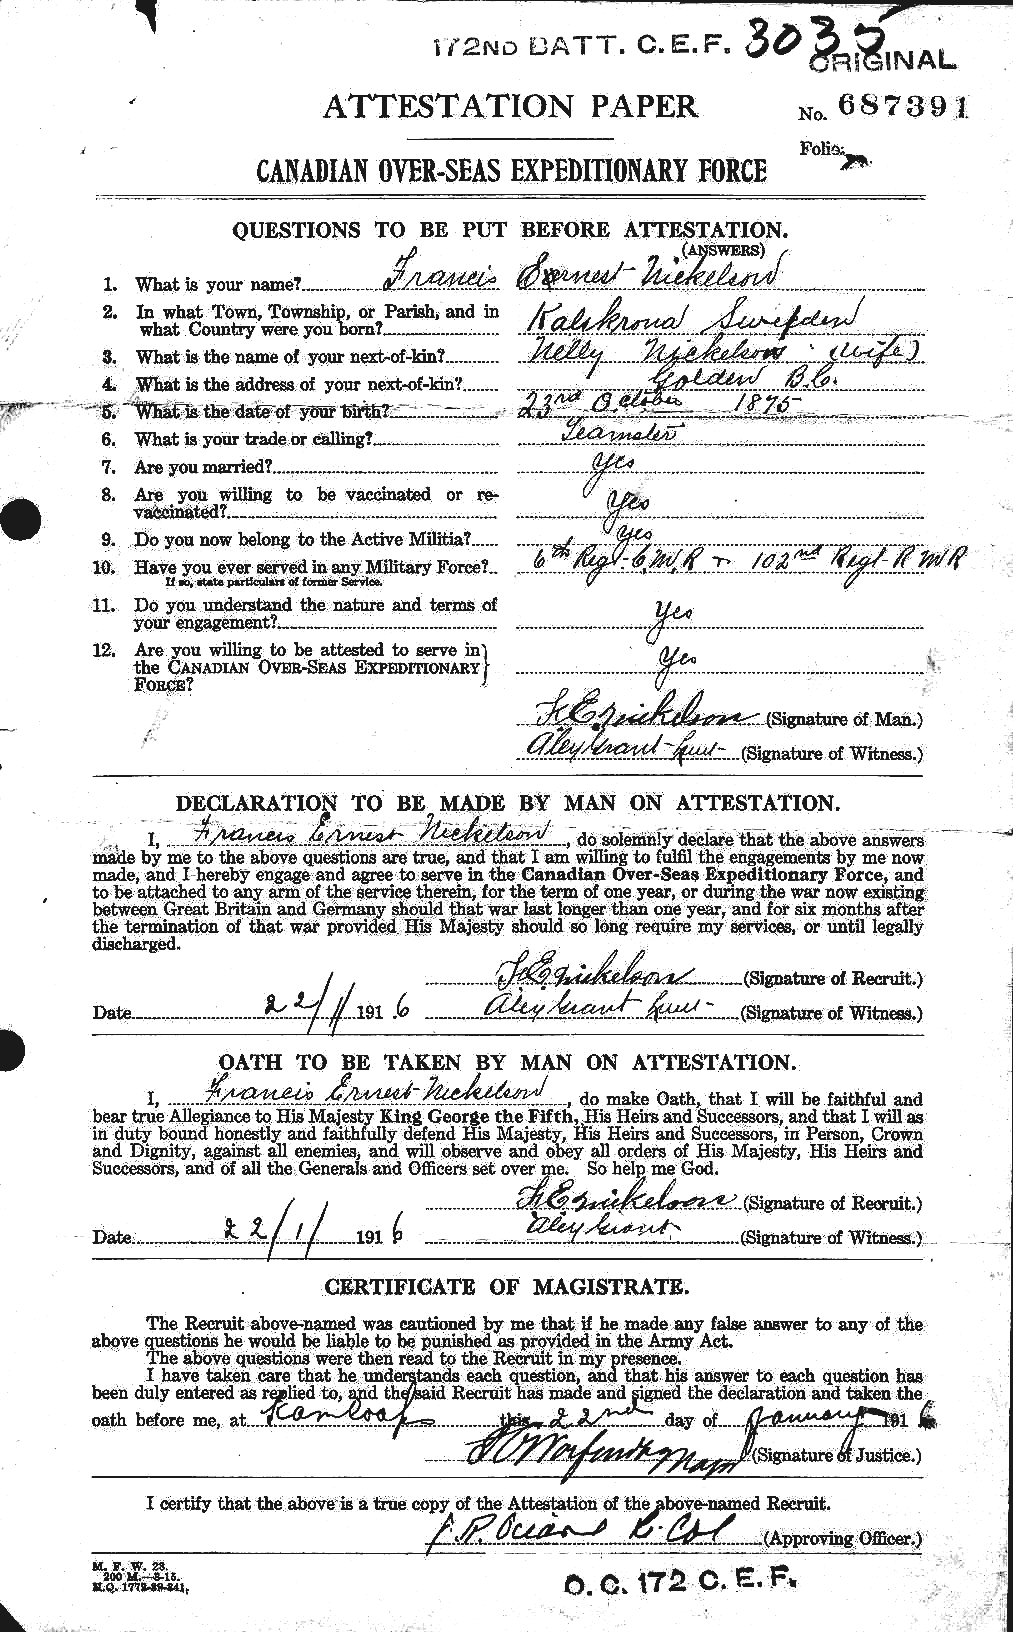 Dossiers du Personnel de la Première Guerre mondiale - CEC 556544a